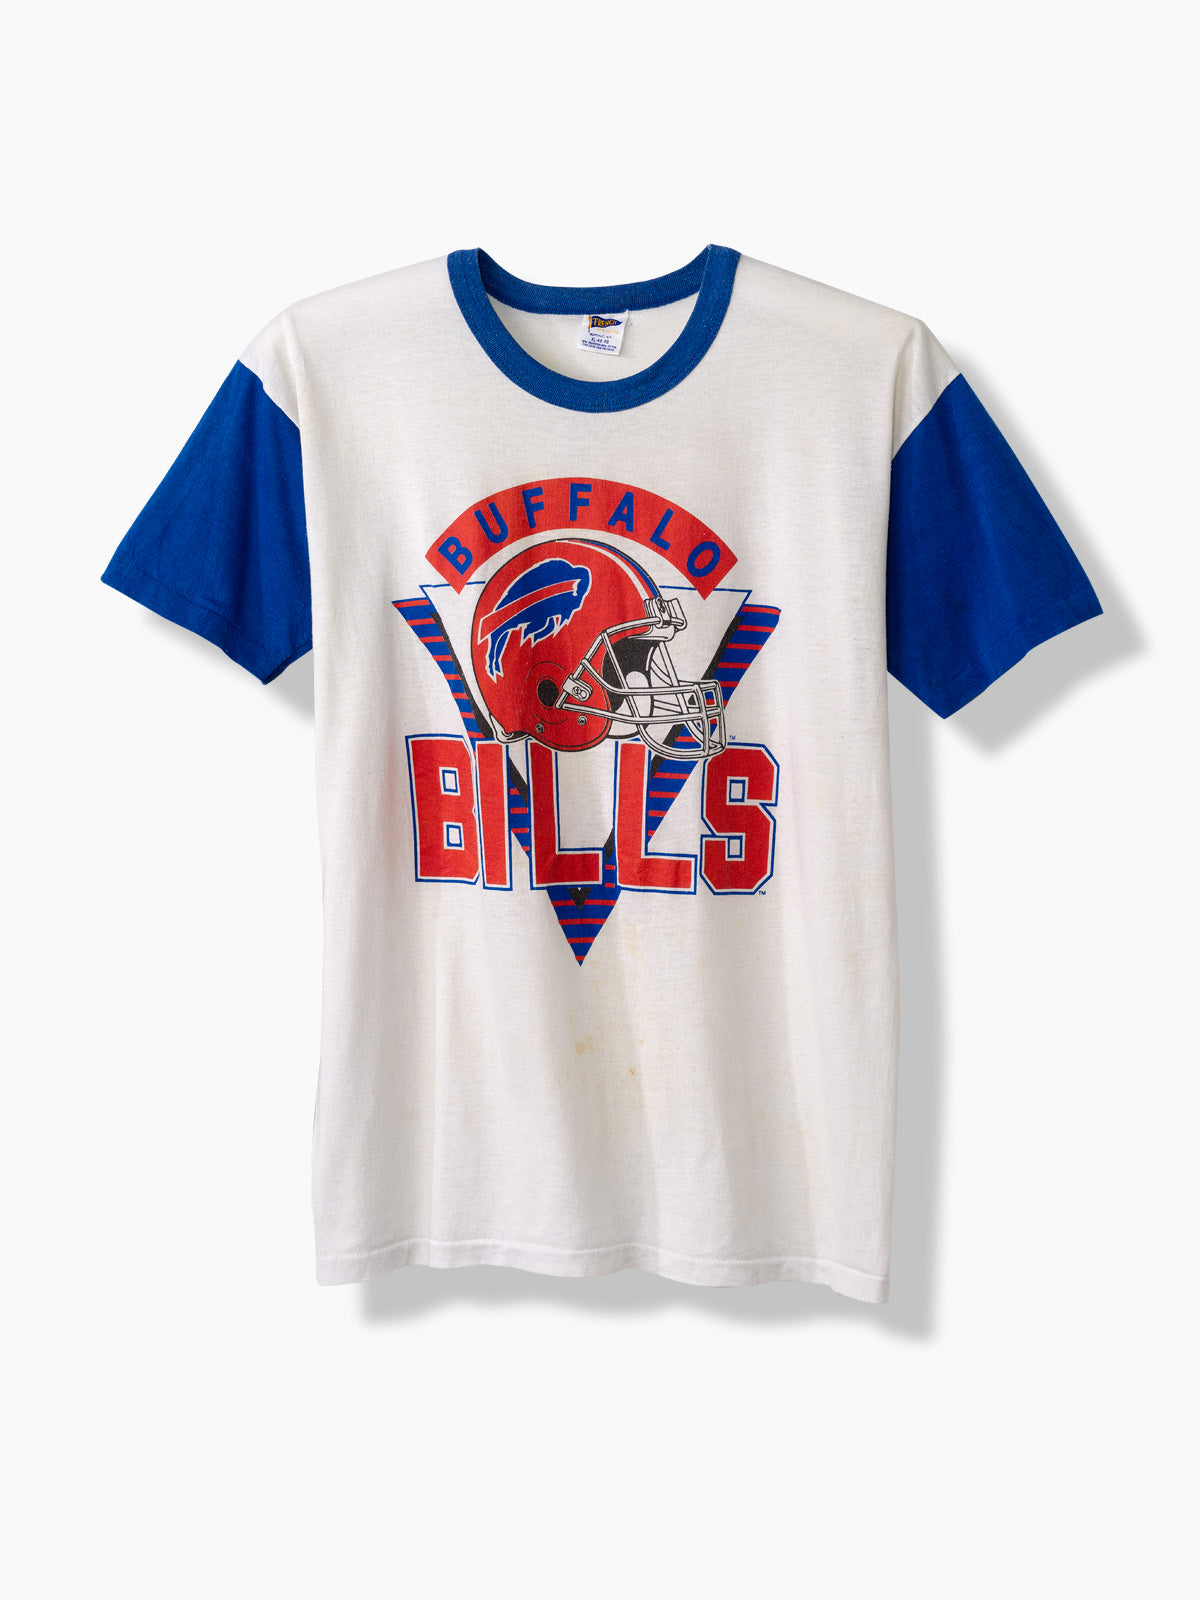 buffalo bills jerseys for sale